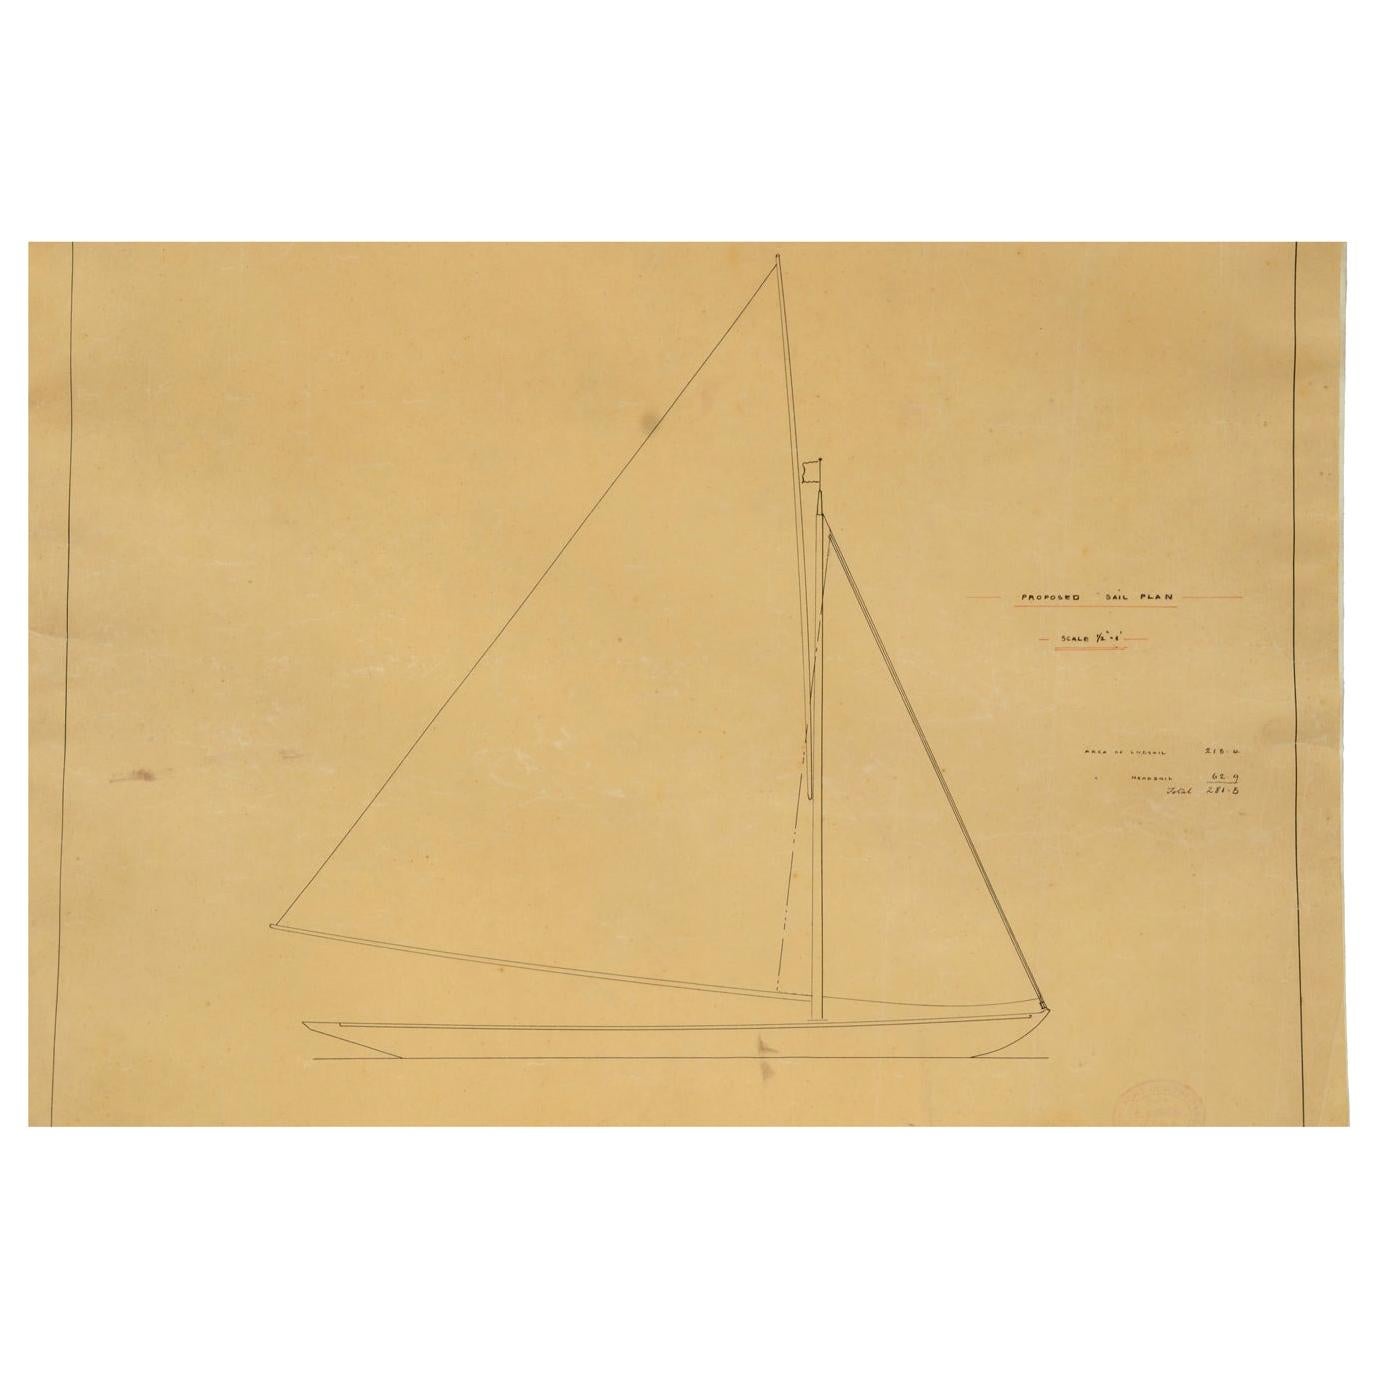 Projet provenant des archives d'A.I.C. et jamais entré dans le circuit commercial représentant le plan de voilure d'un bateau de C. Sibbick. Dimensions : 57 x 46,5 (H) cm - 22,44 x 18,30 (H) pouces : 57 x 46.5 (H) cm - 22.44 x 18.30 (H) pouces.